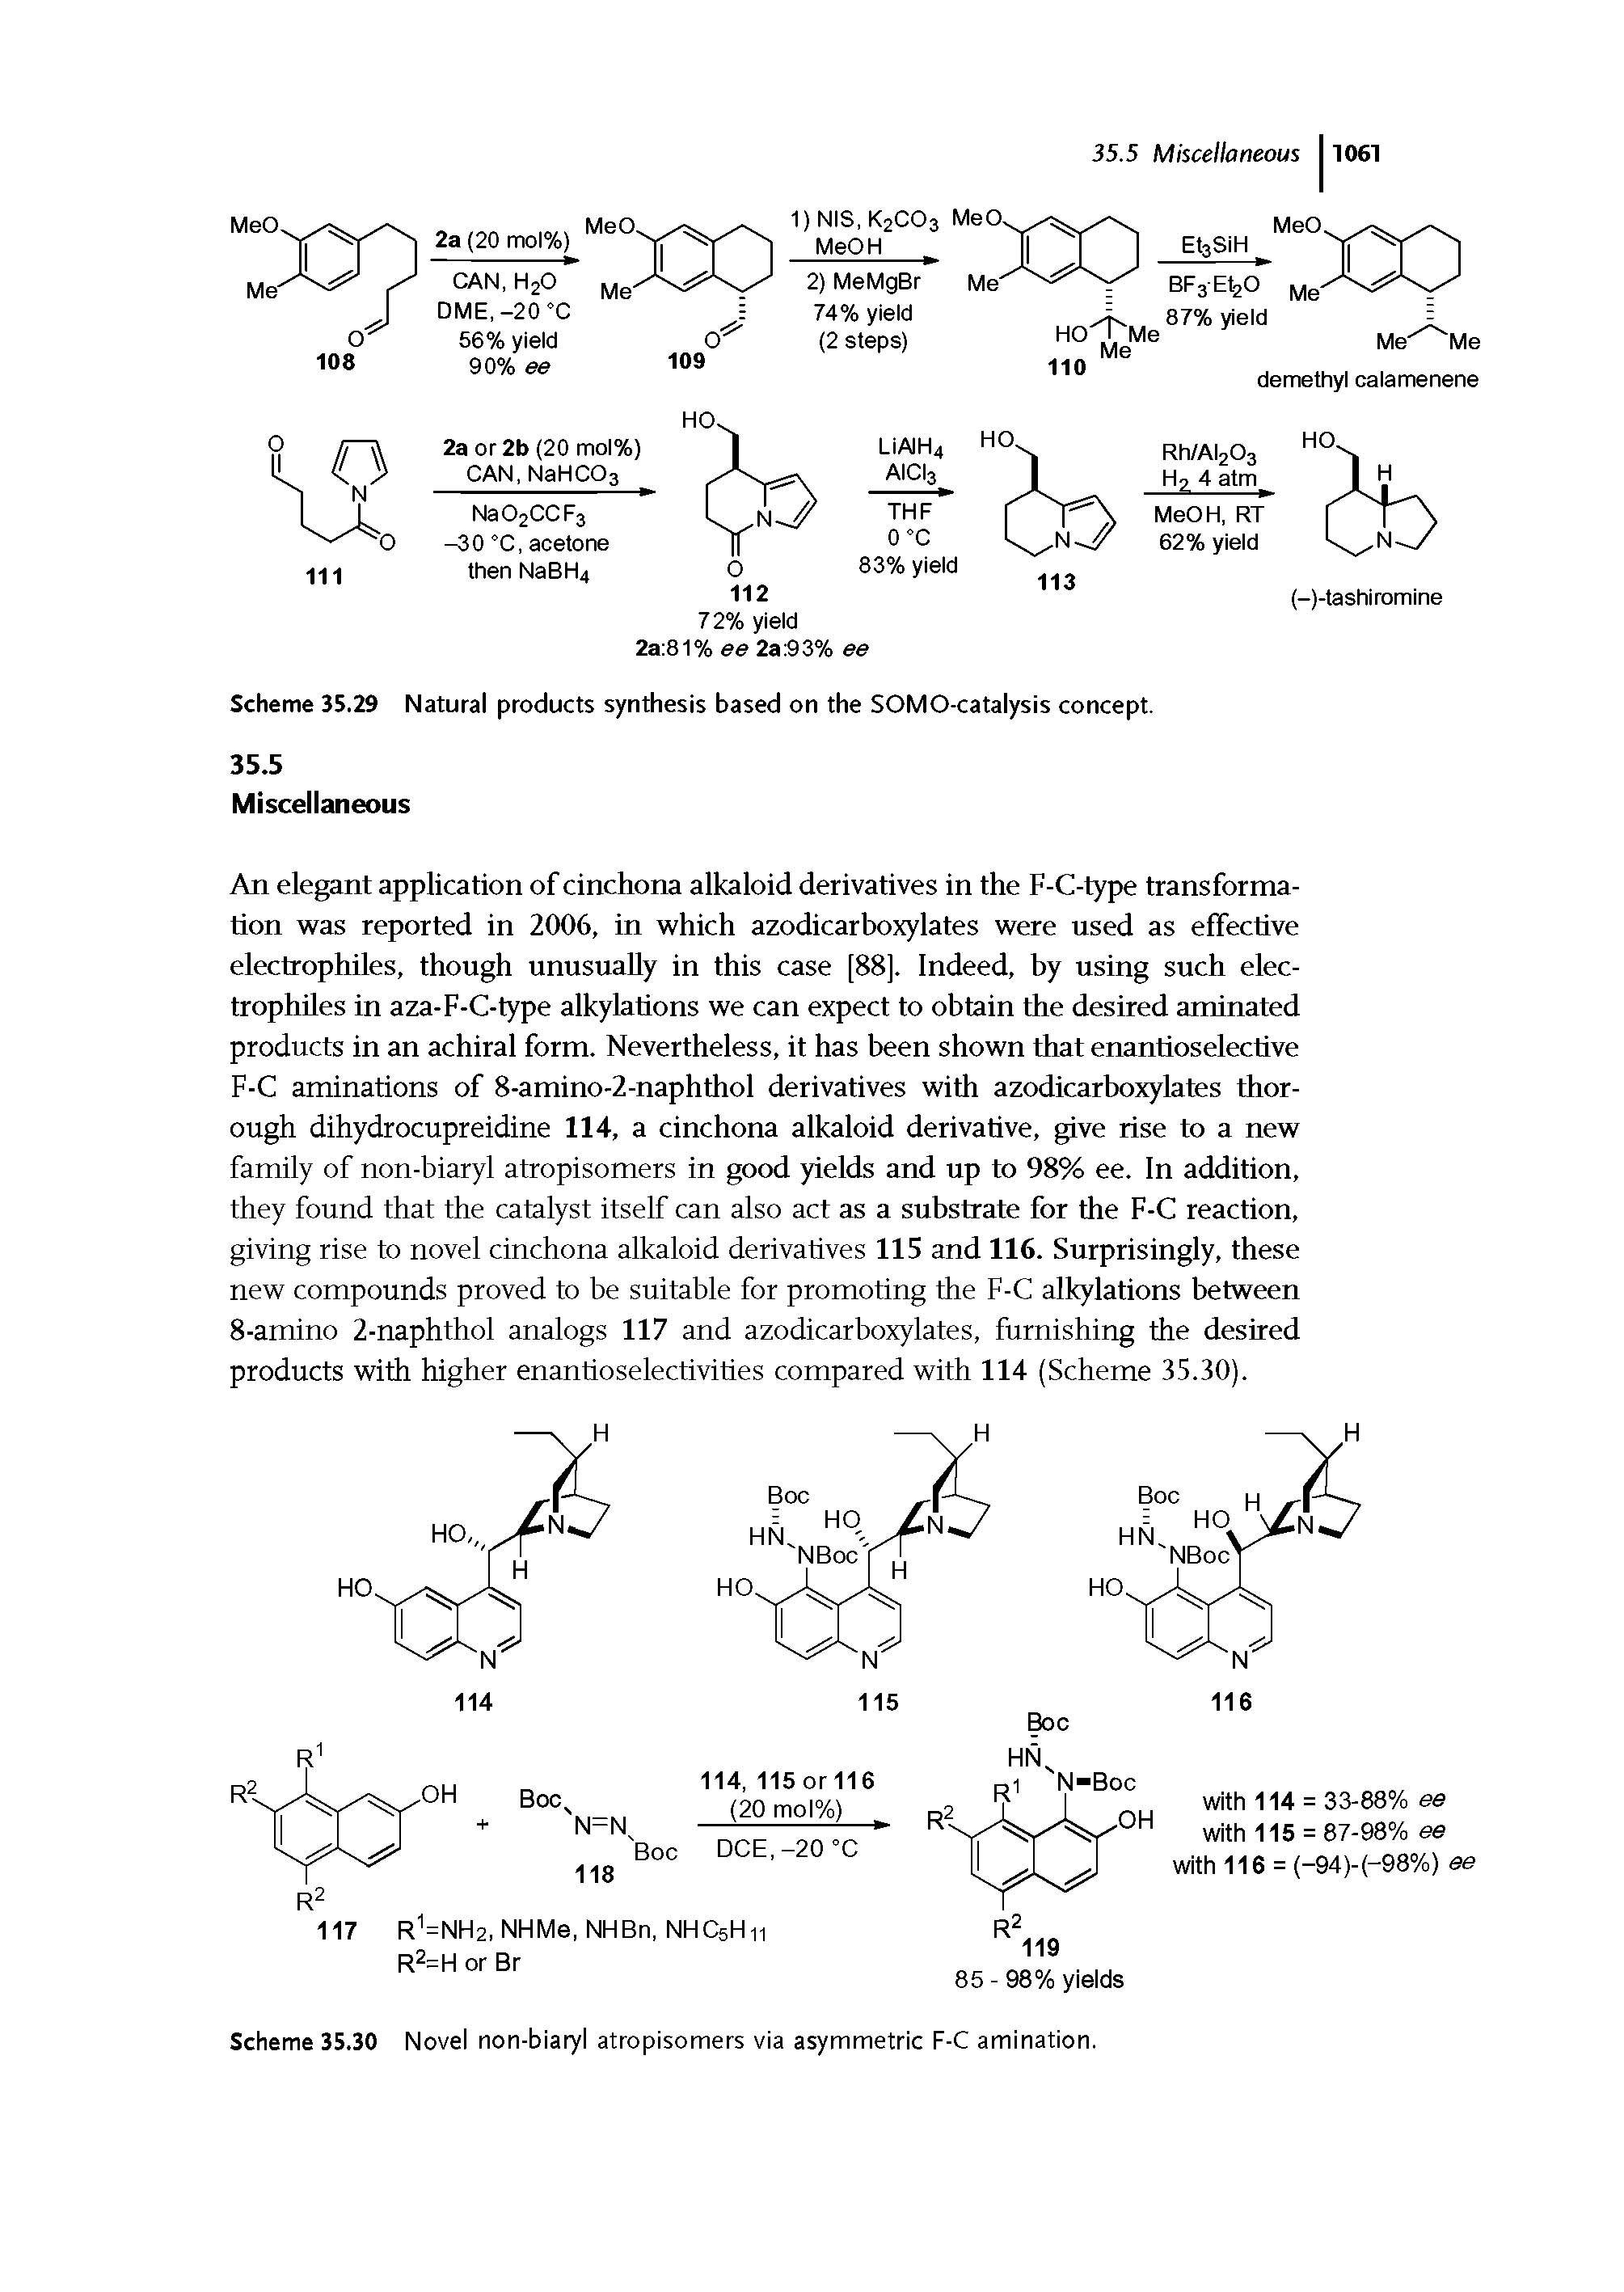 Scheme 35.30 Novel non-biaryl atropisomers via asymmetric F-C amination.